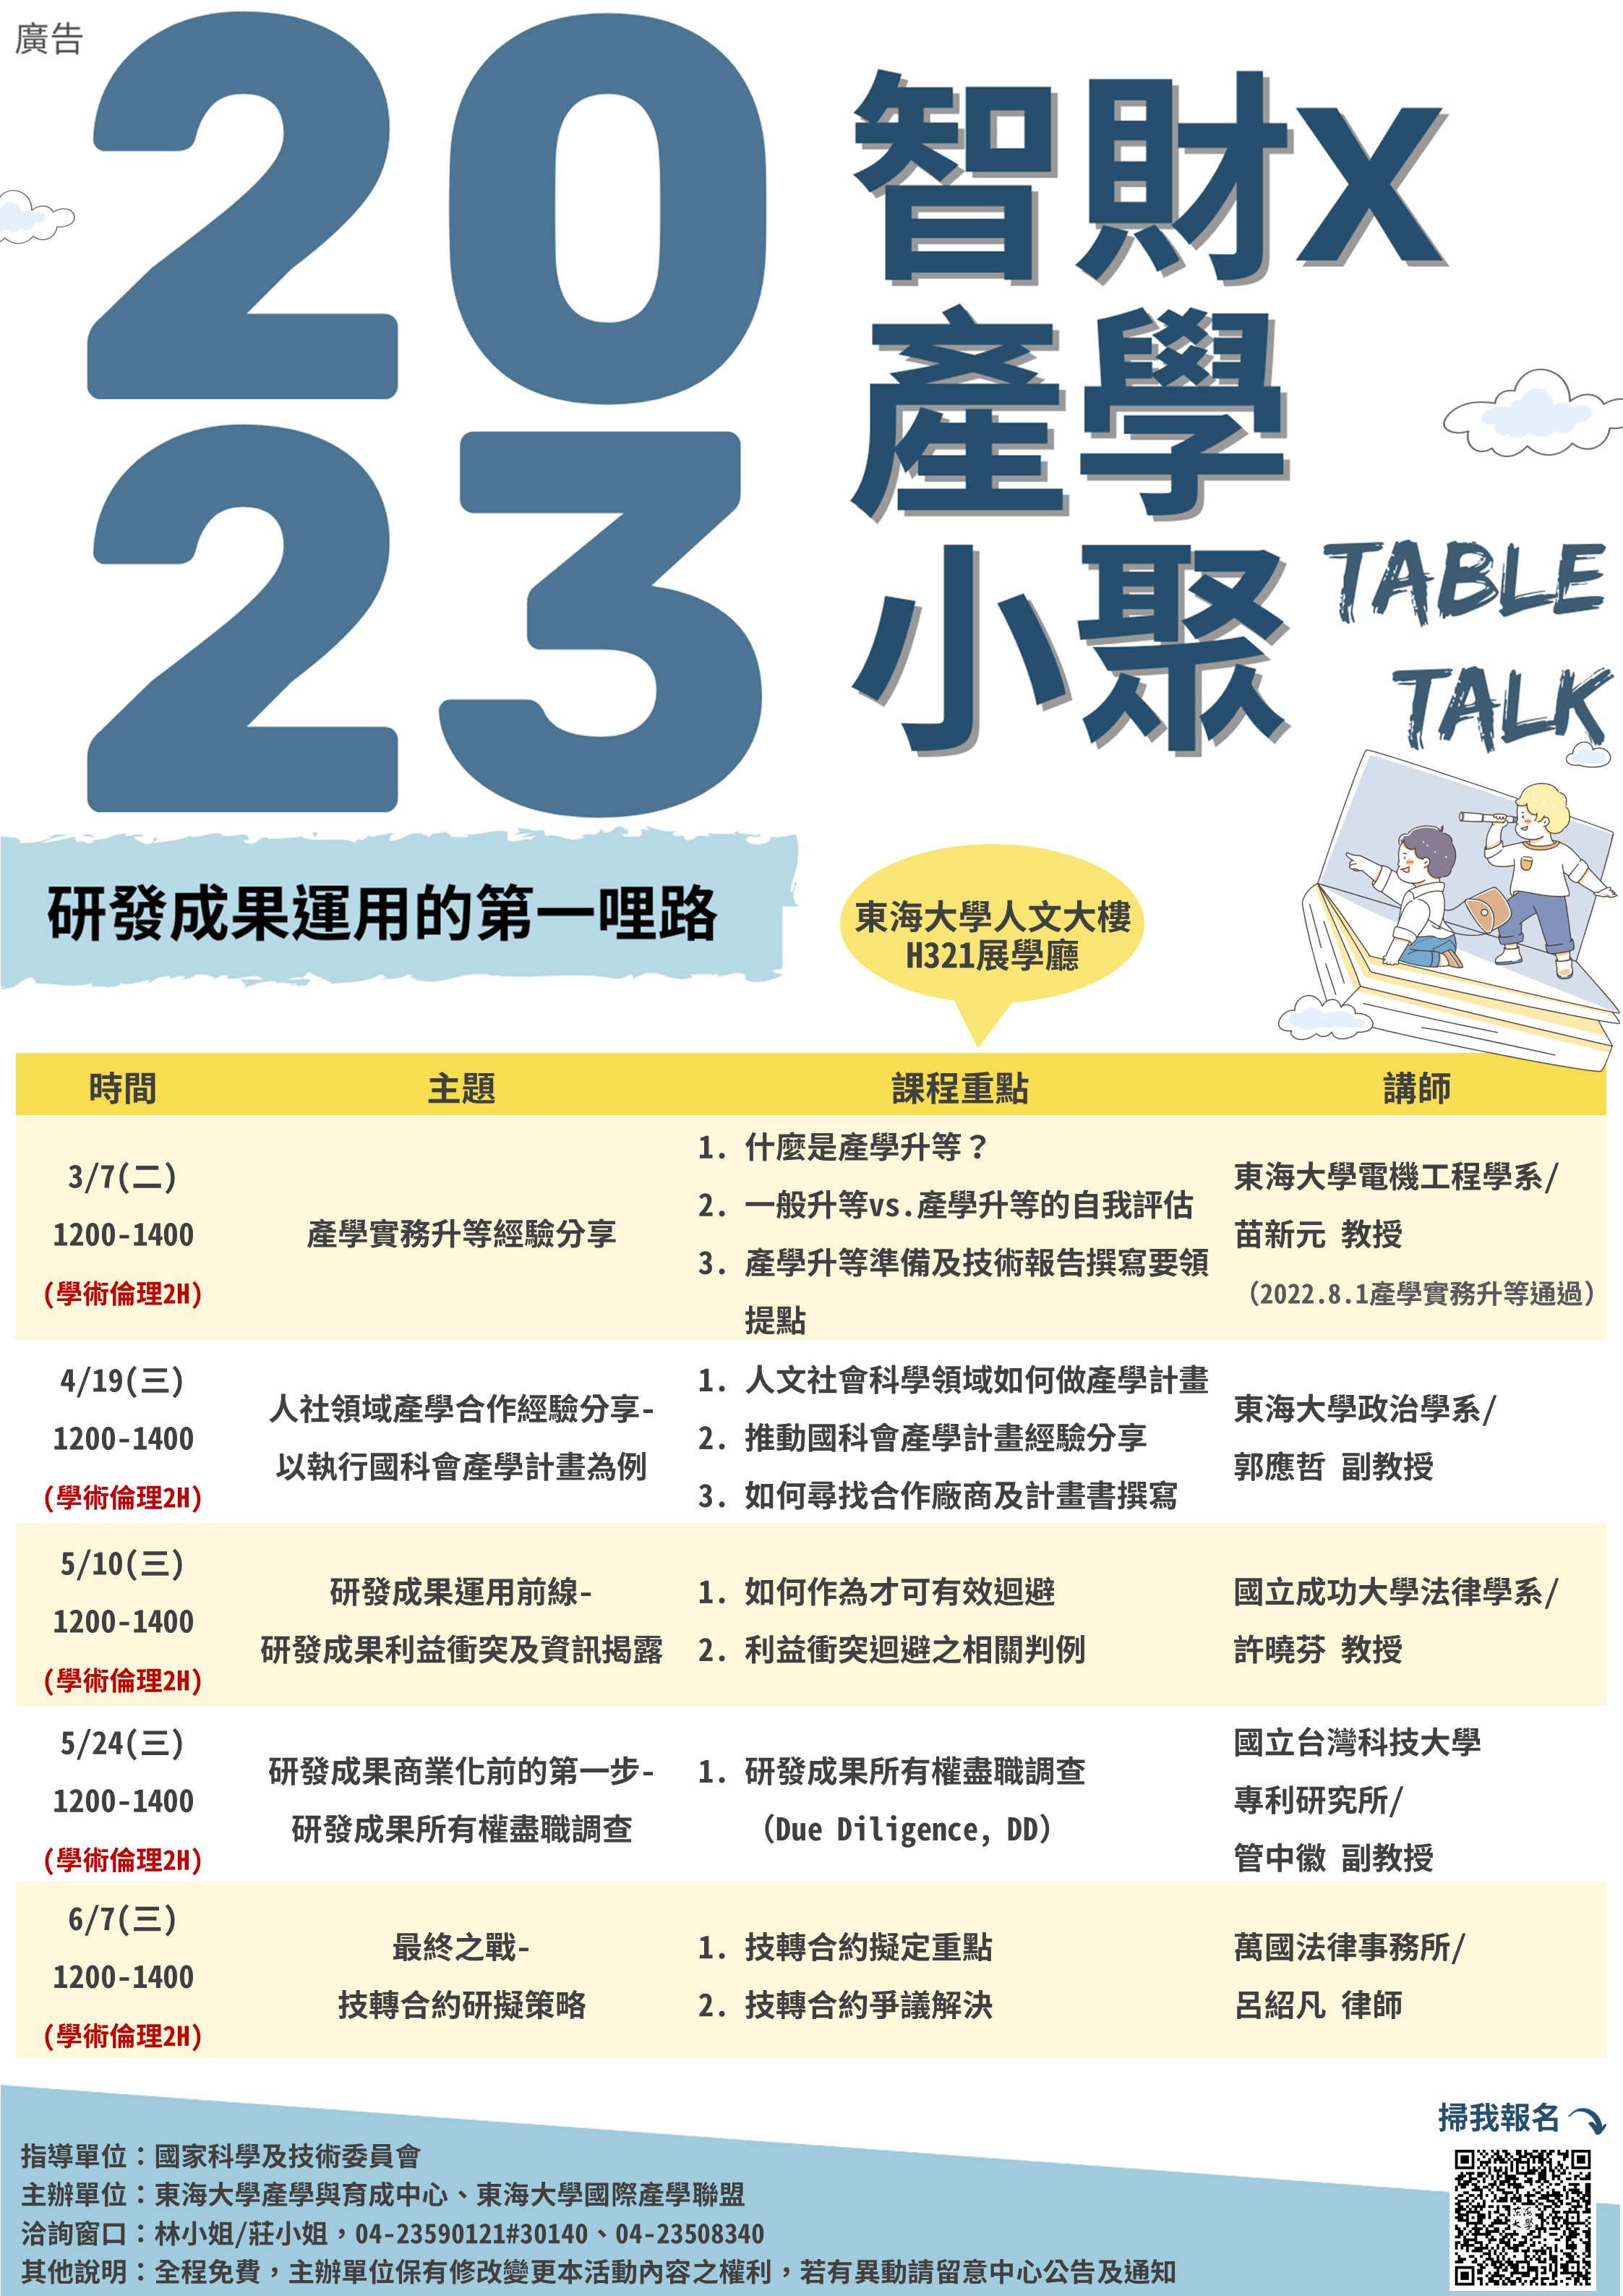 【研發成果運用的第一哩路】Table talk｜2023智財x產學小聚